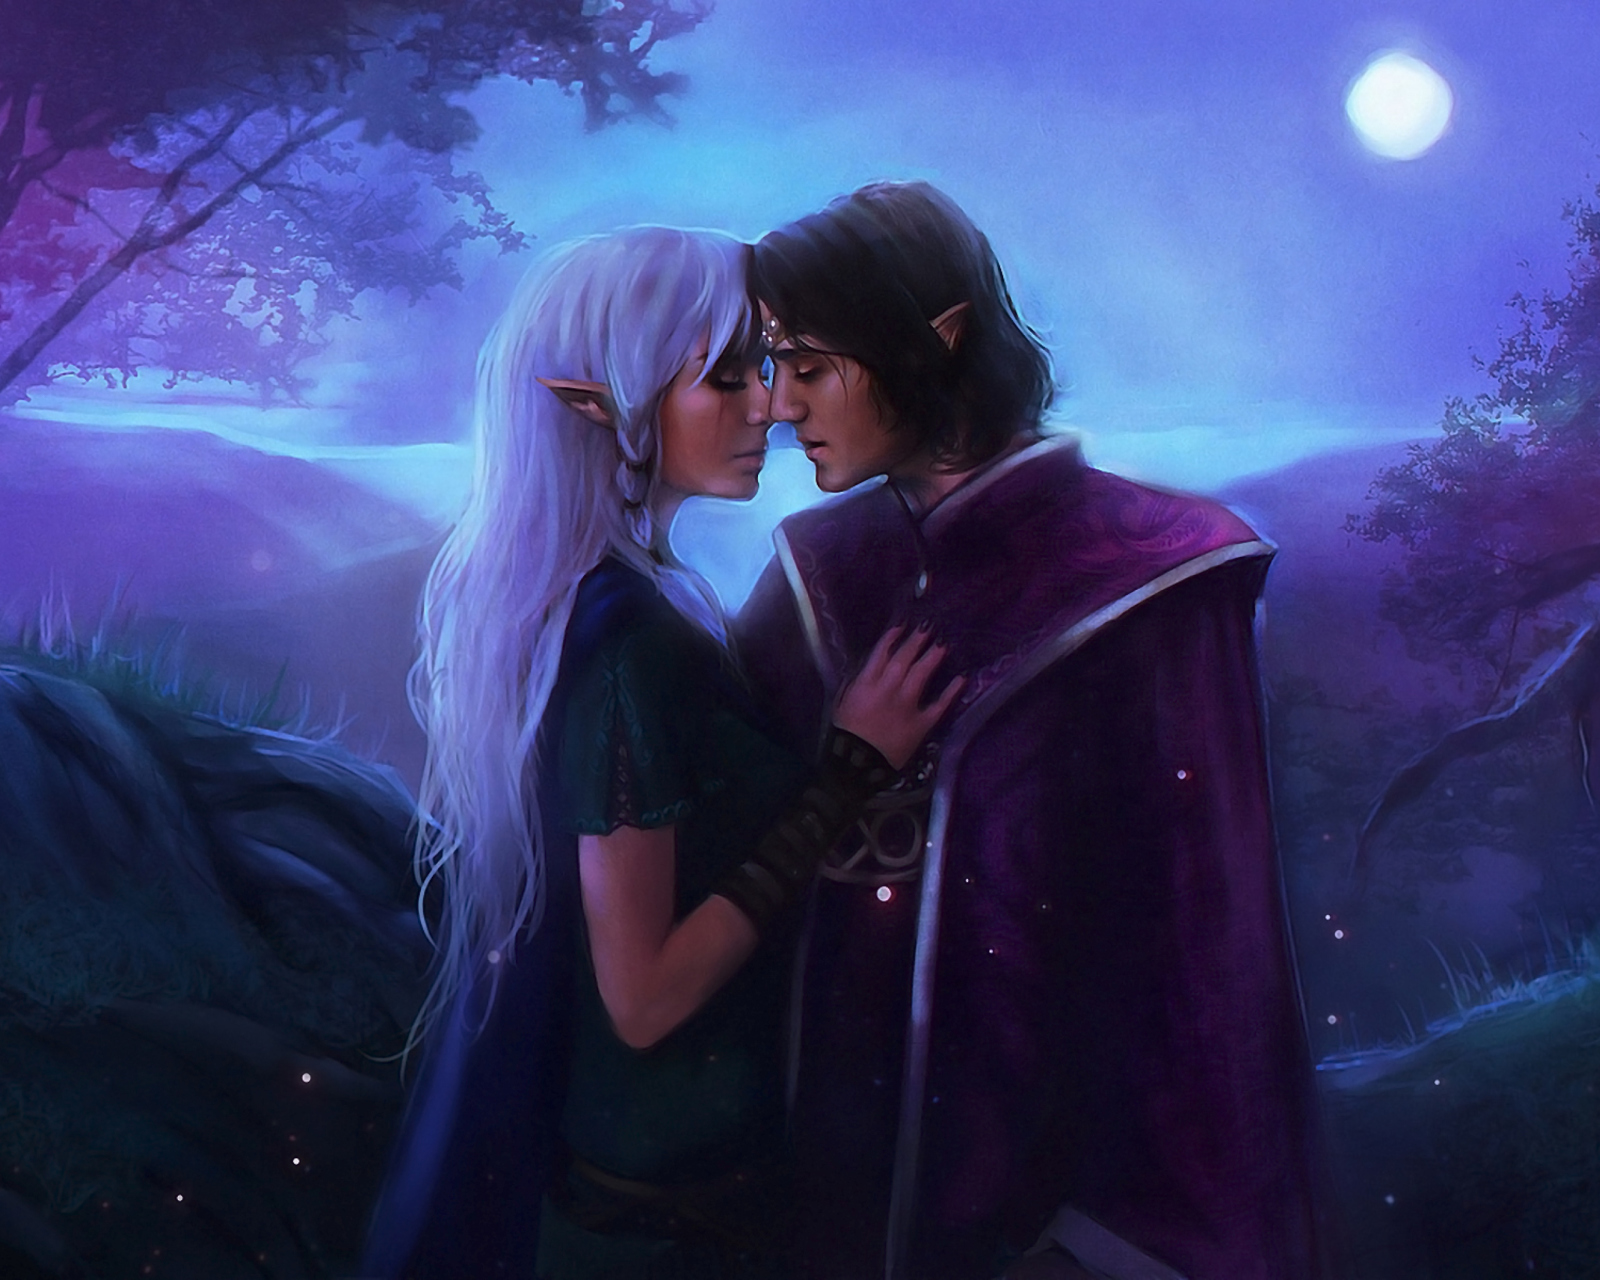 Love In Moonlight Fantasy wallpaper 1600x1280